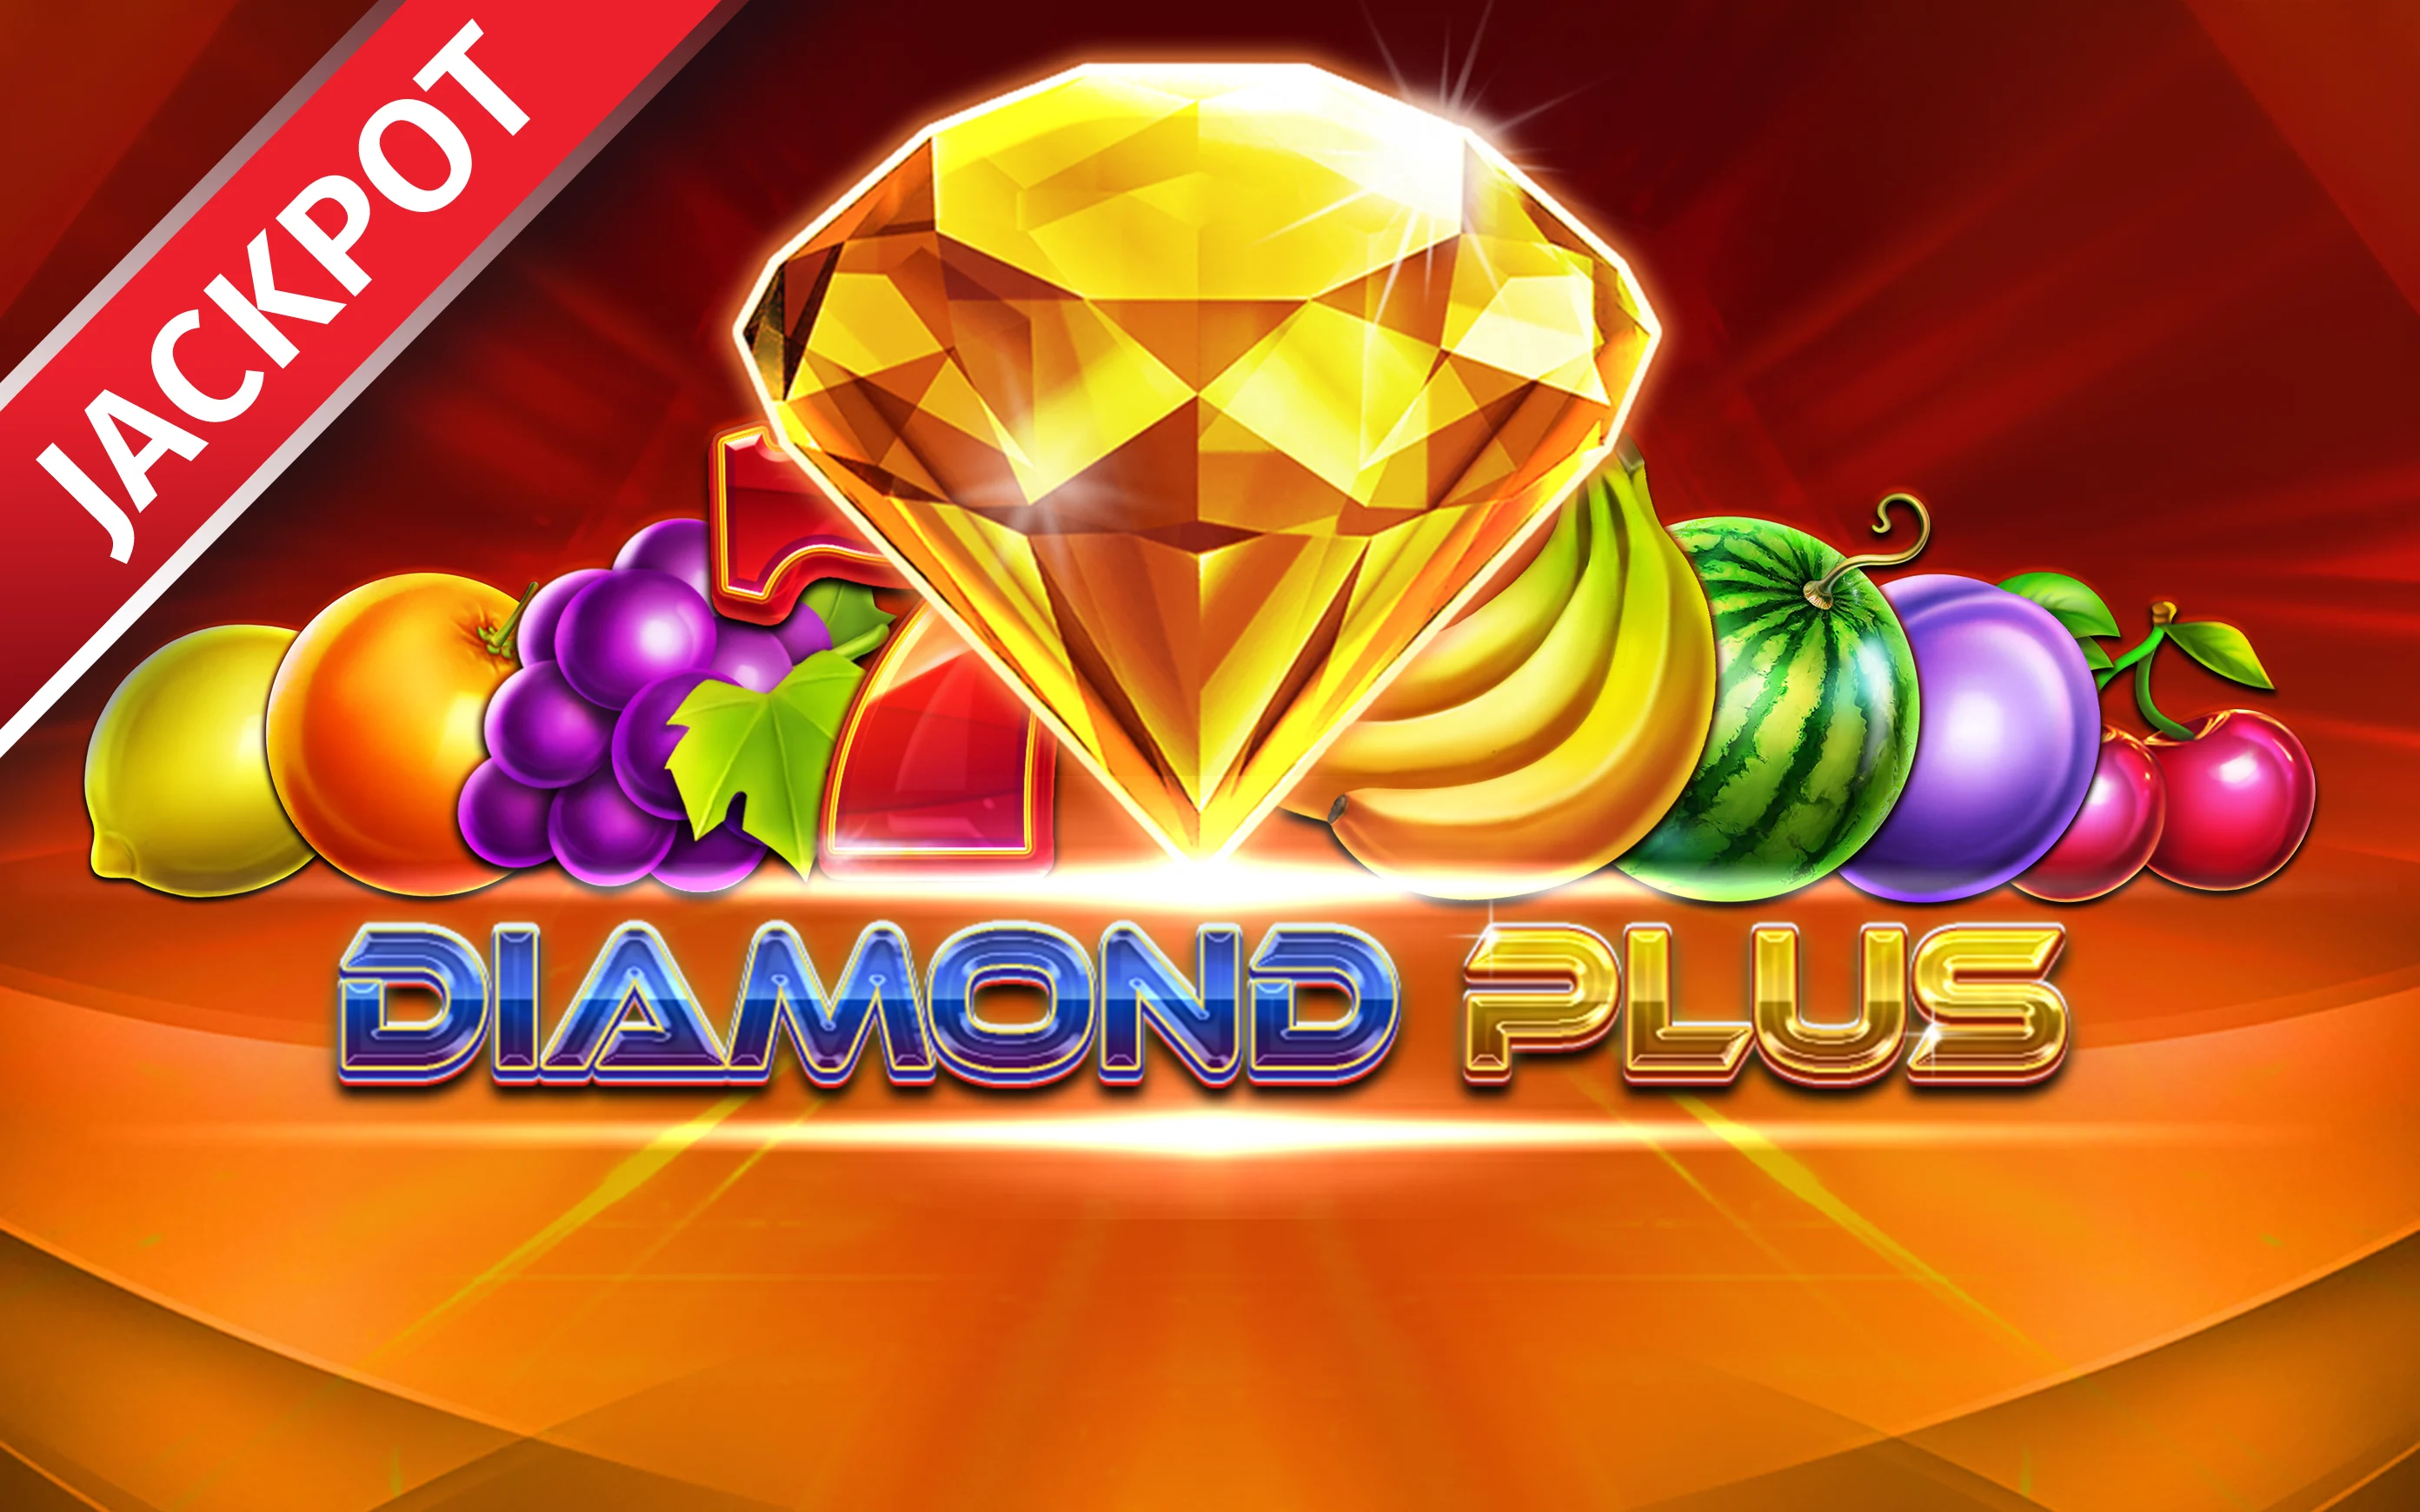 Jouer à Diamond Plus sur le casino en ligne Starcasino.be